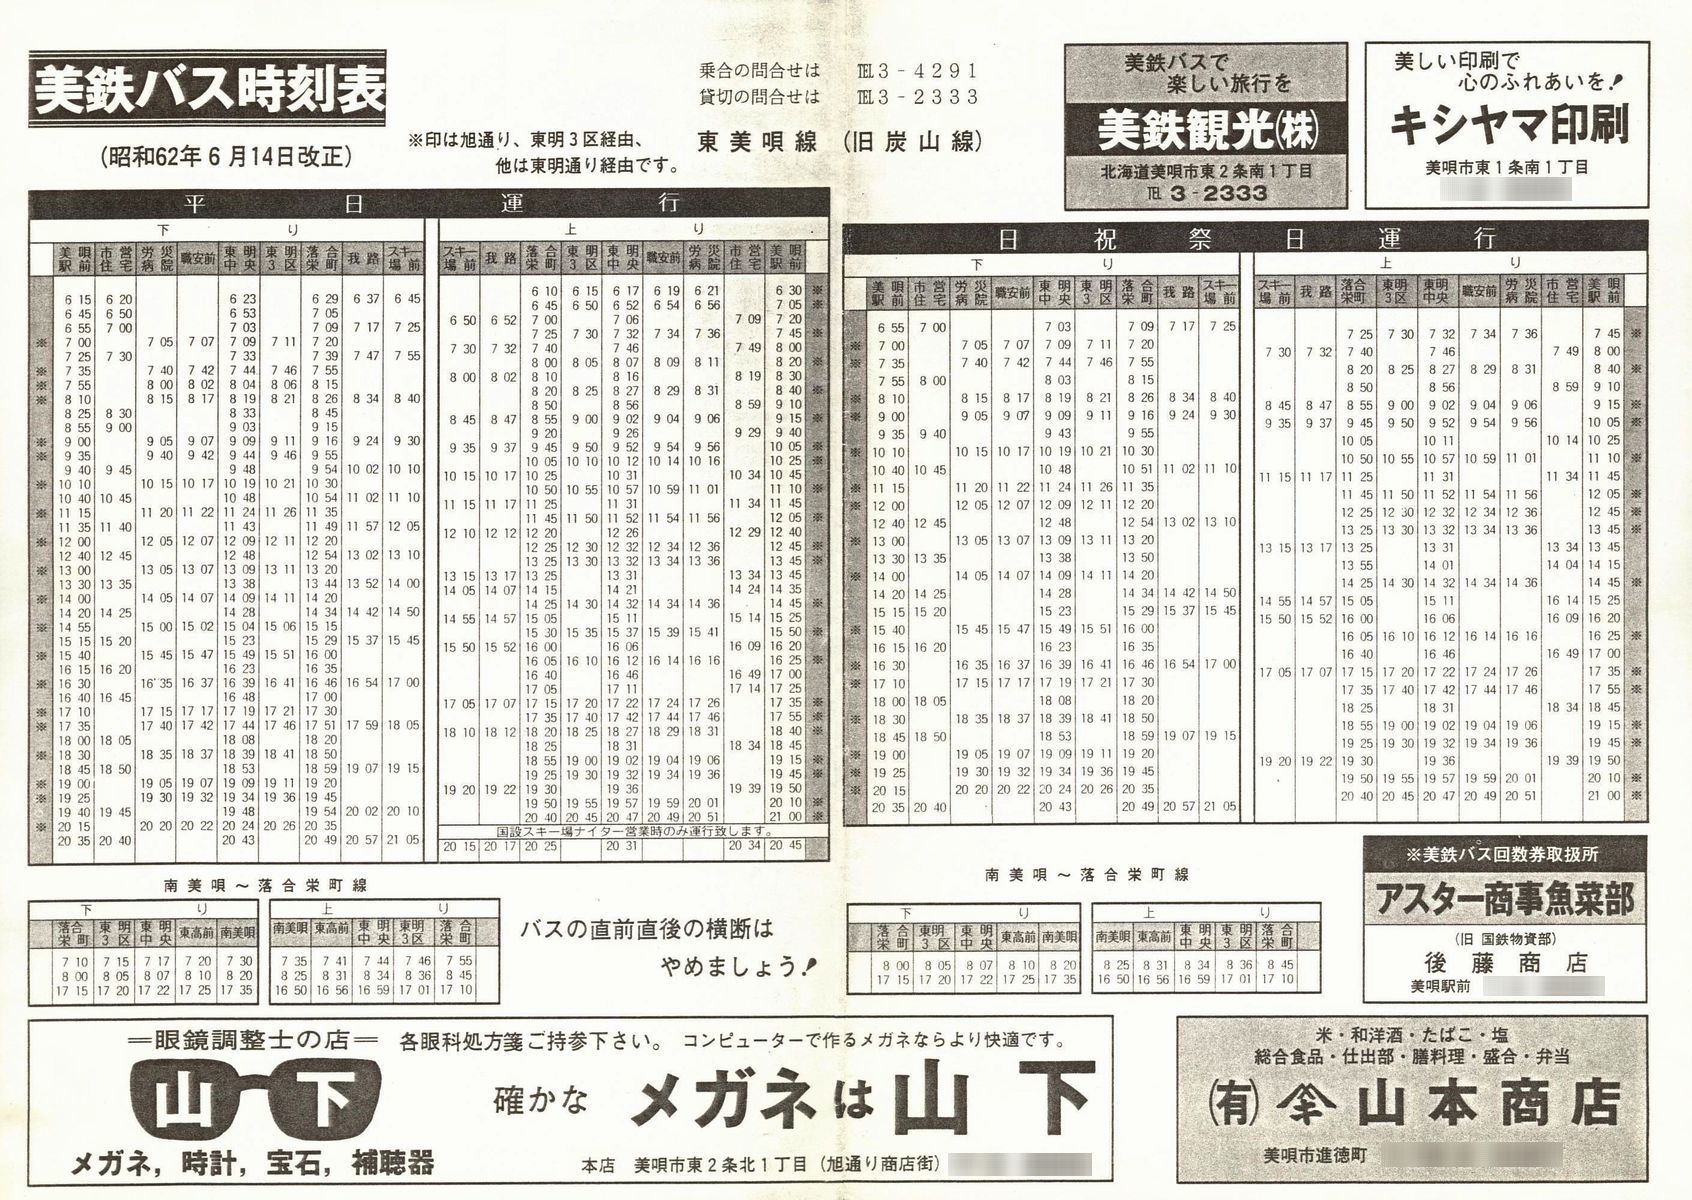 1987-06-14改正_美鉄バス_美唄地区時刻表